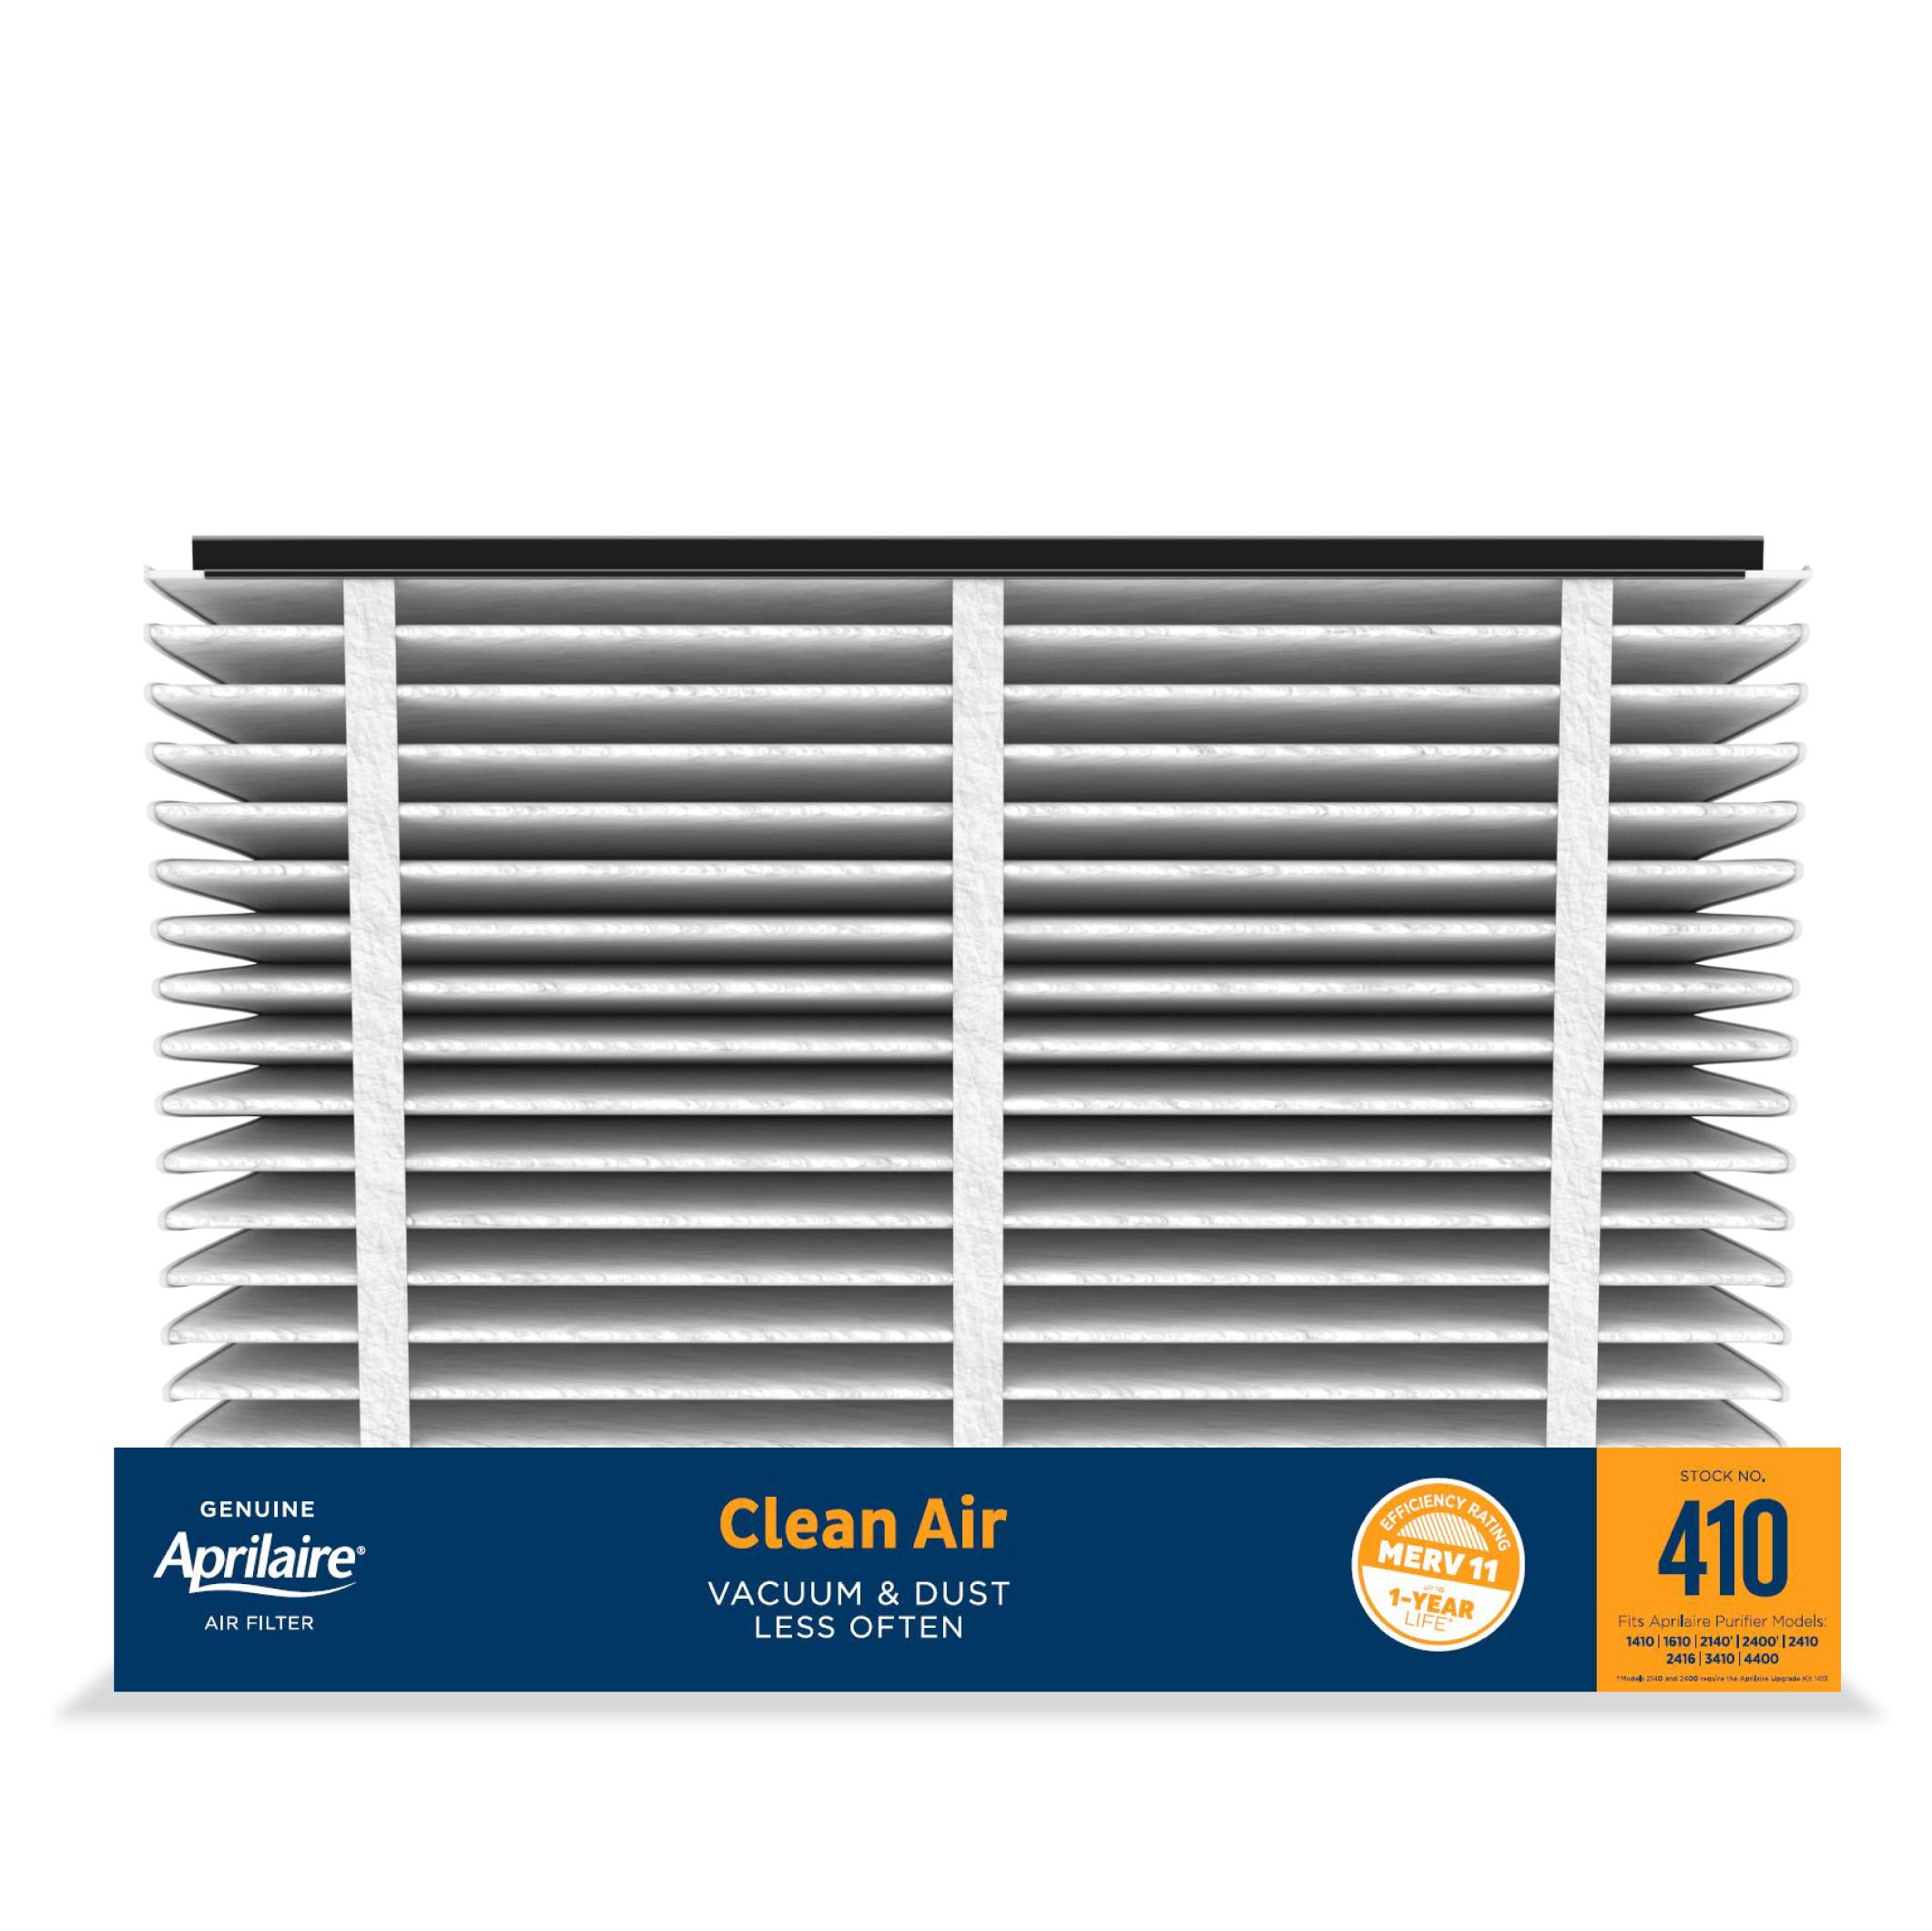 Aprilaire 410 مرشح هواء الفرن البديل لأجهزة تنقية الهواء المنزلية بالكامل